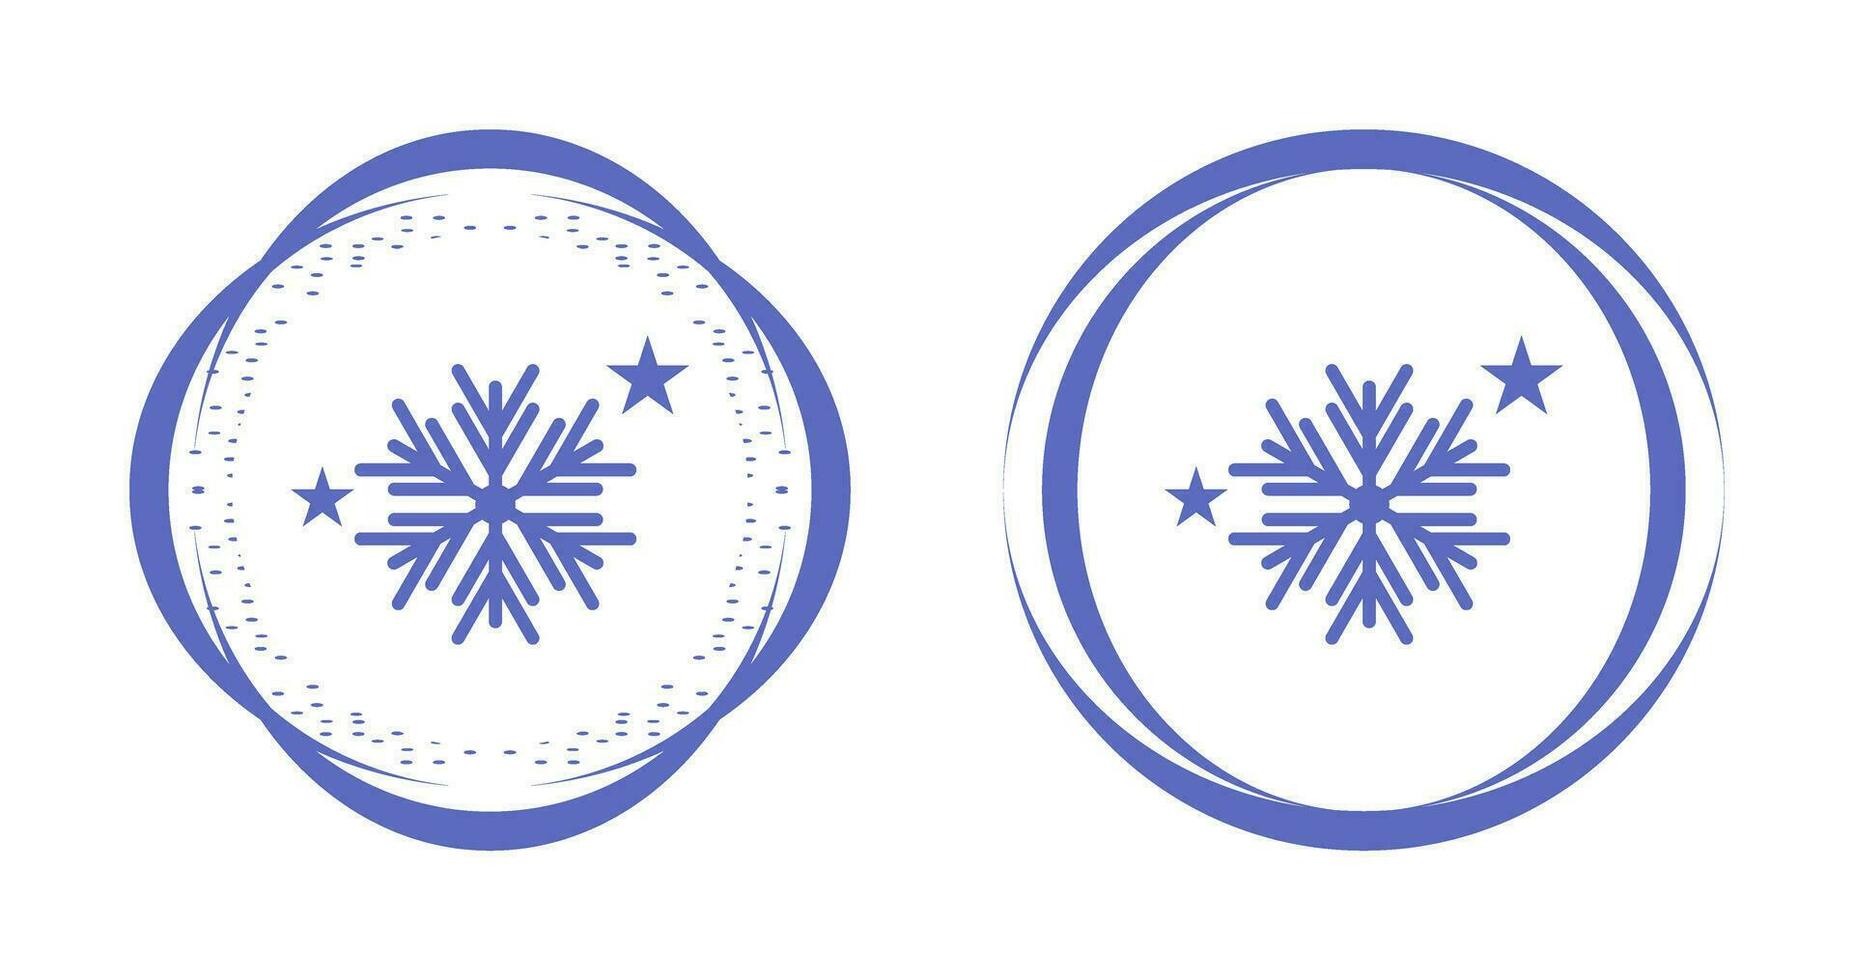 ícone de vetor de flocos de neve